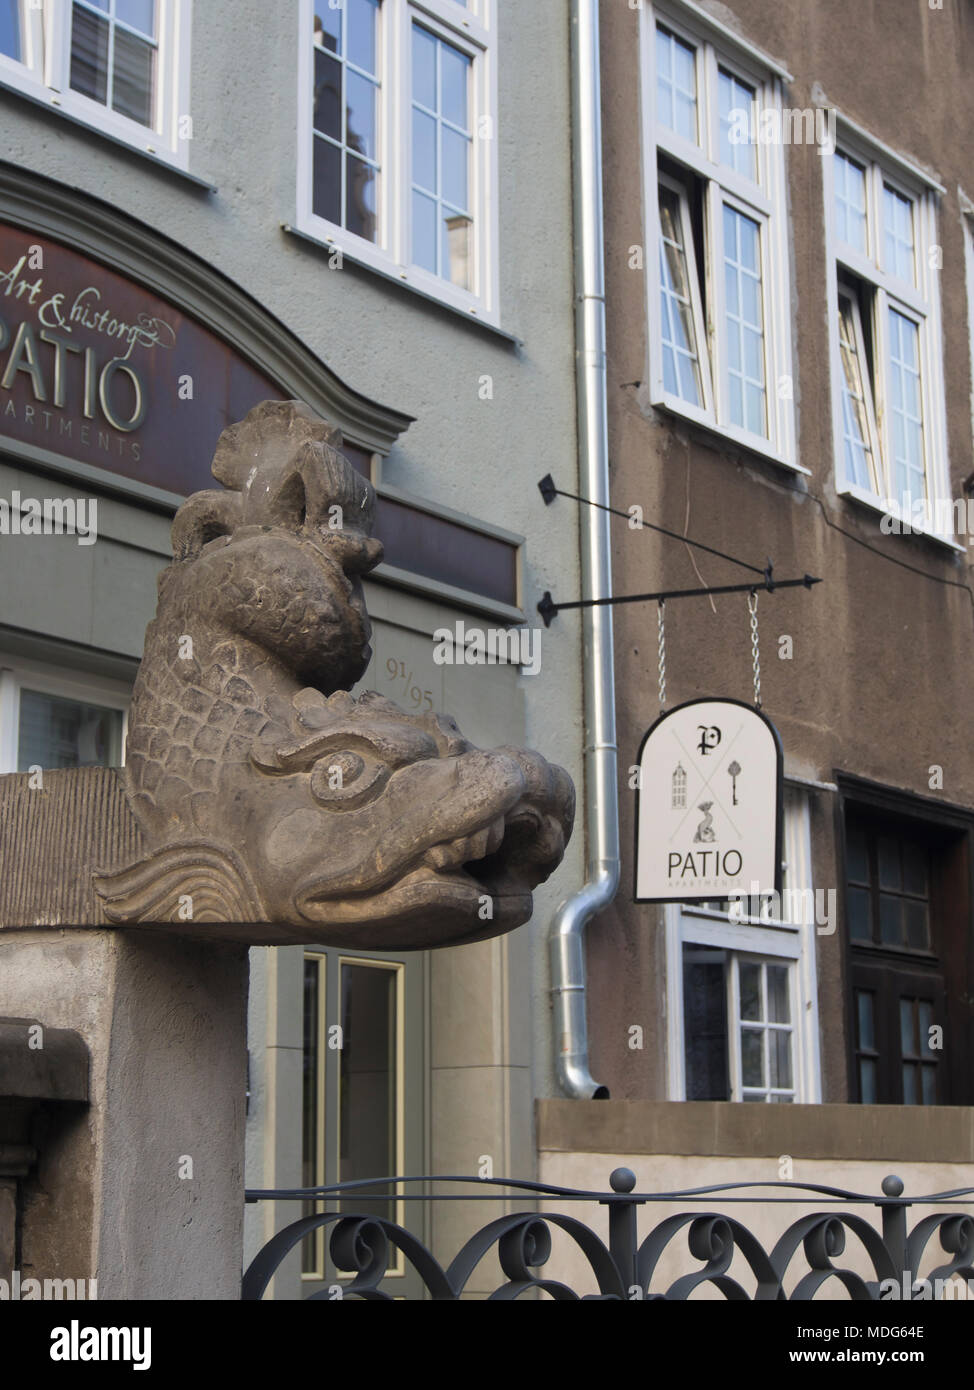 Des eaux pluviales d'un toit dans la principale ville de Gdansk Pologne pouvez verser hors de ces créatures de fantaisie en pierre sculptée Banque D'Images